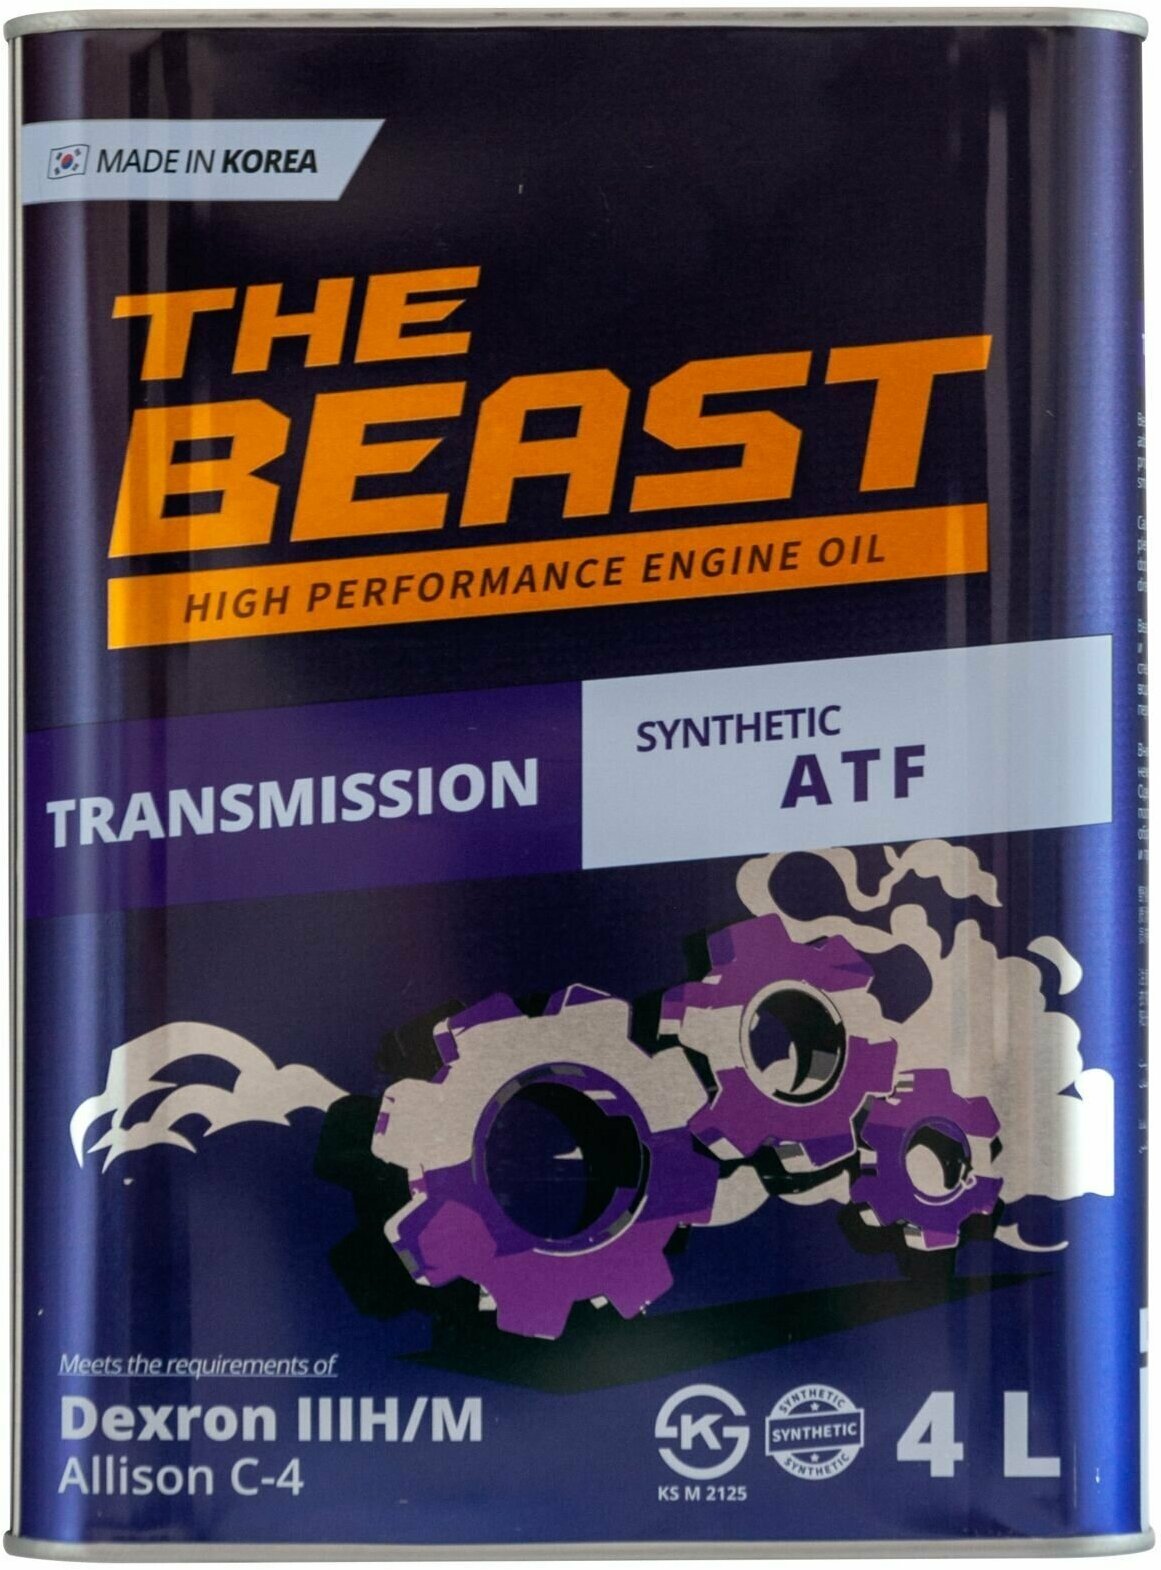 Трансмиссионное масло THE Beast ATF 3 синтетическое 4 л Сделано в Корее .